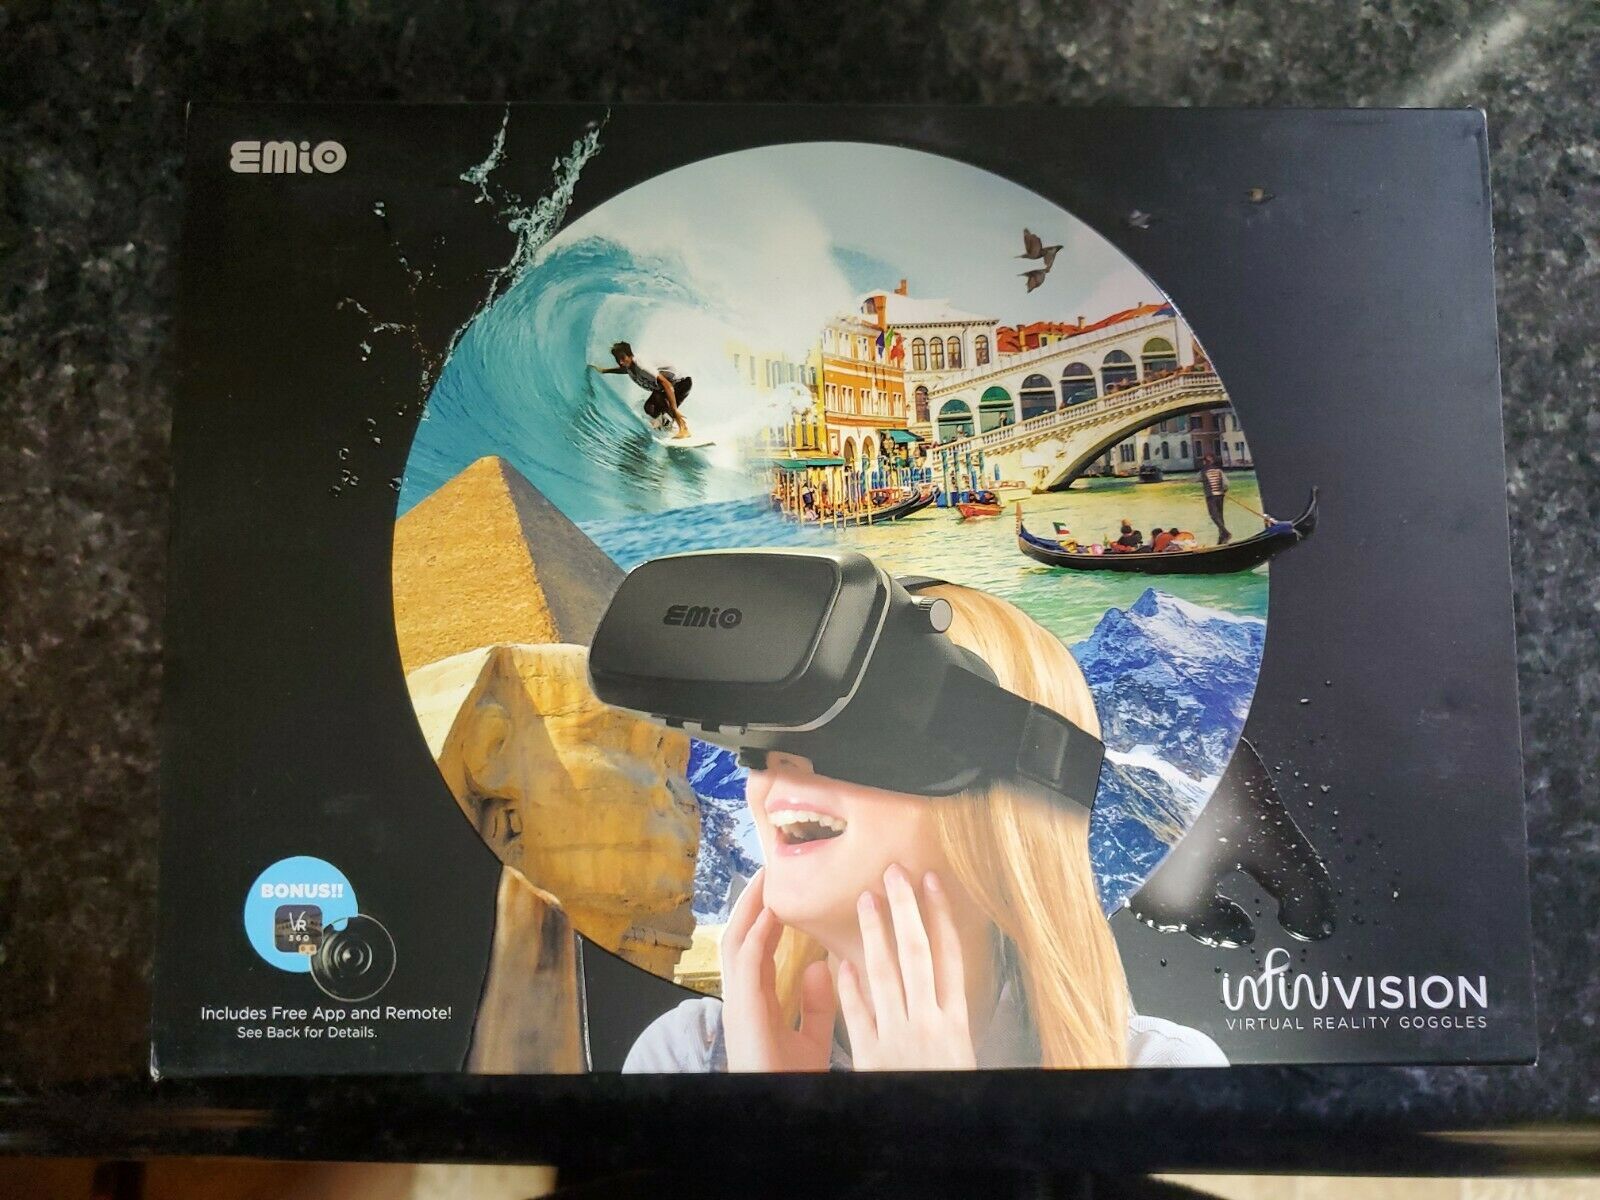 Emio Infinivision Virtual Reality Goggles